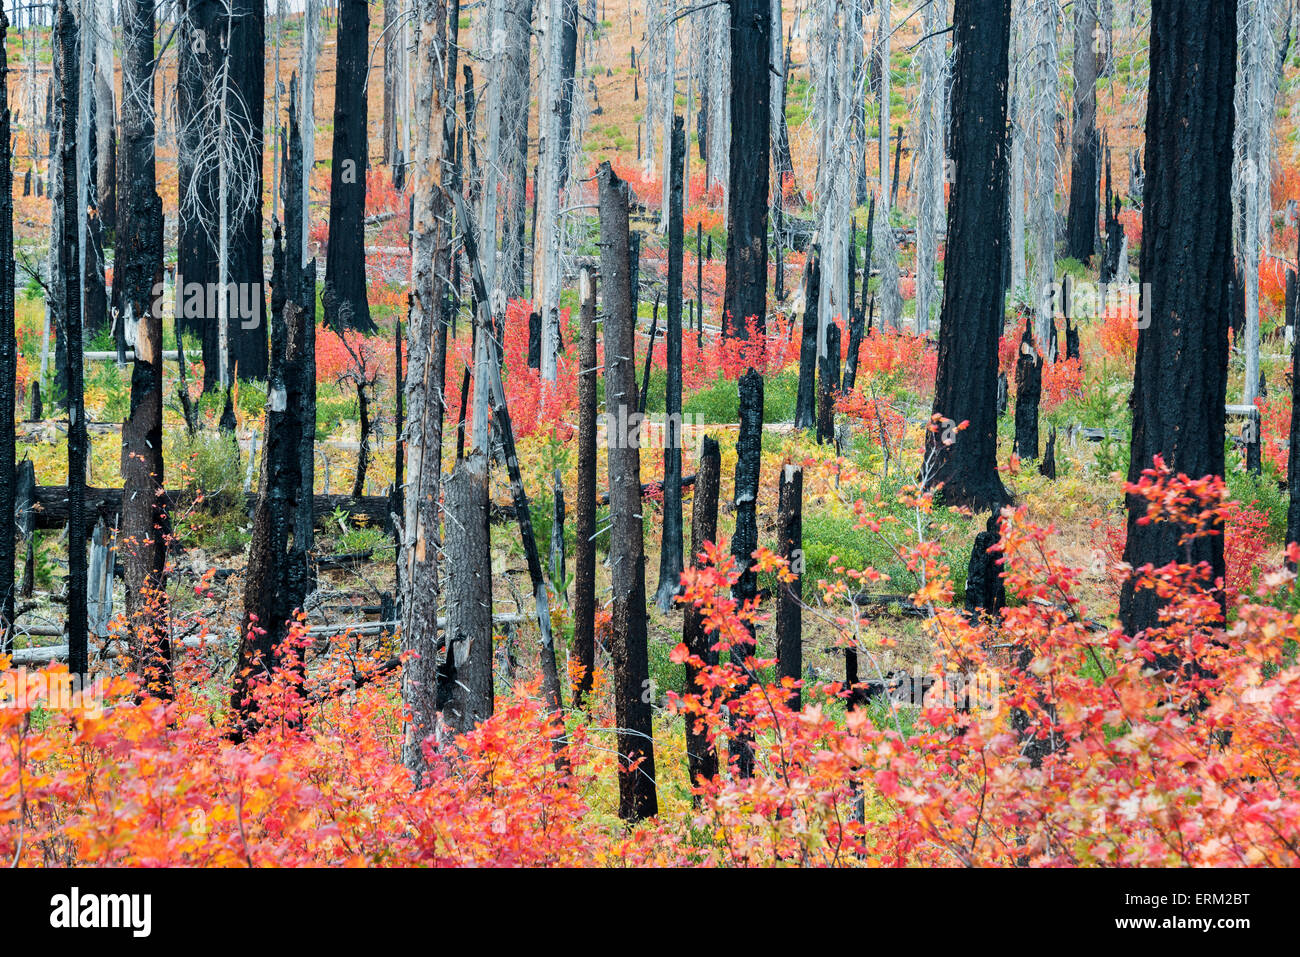 Les souches d'arbres calcinés et dynamique la nouvelle croissance, rouge et vert et des plantes dans la forêt après un incendie. Banque D'Images